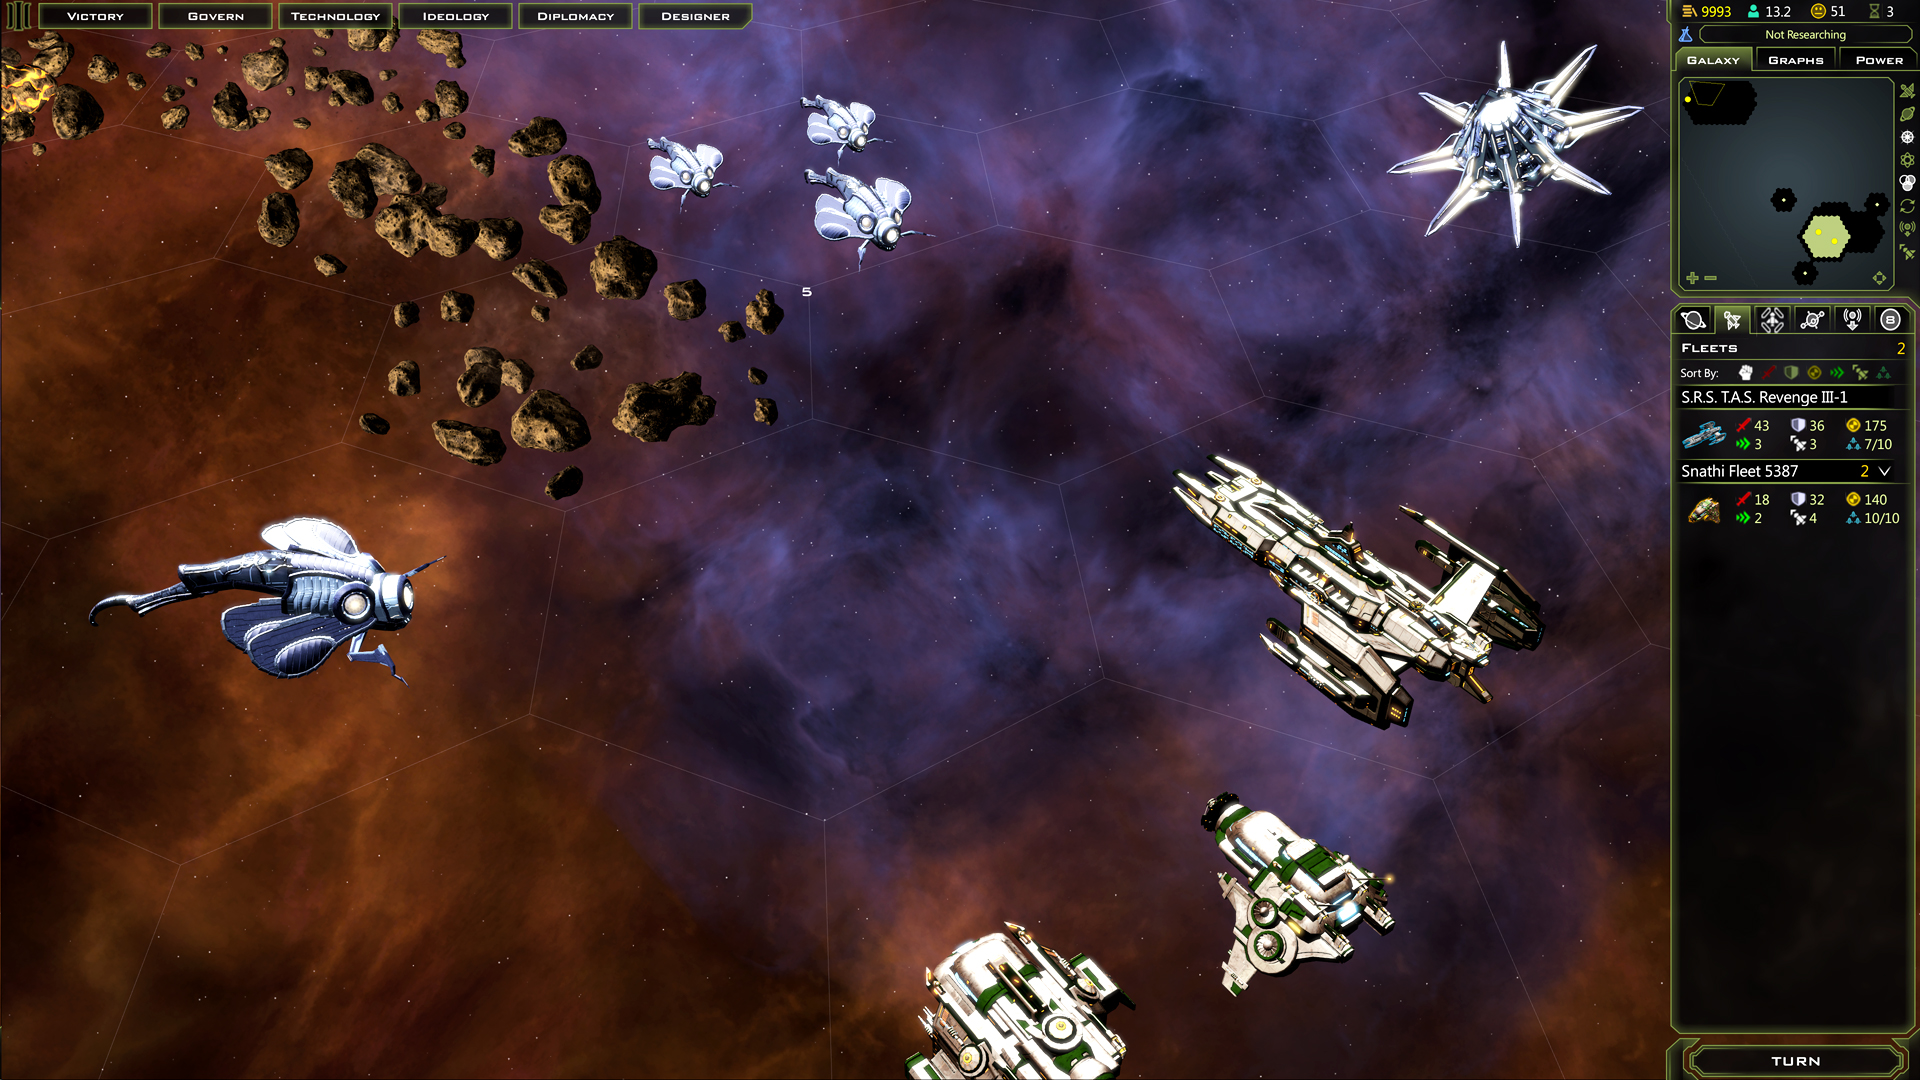 Galactic Civilizations III - Revenge of the Snathi DLC screenshot